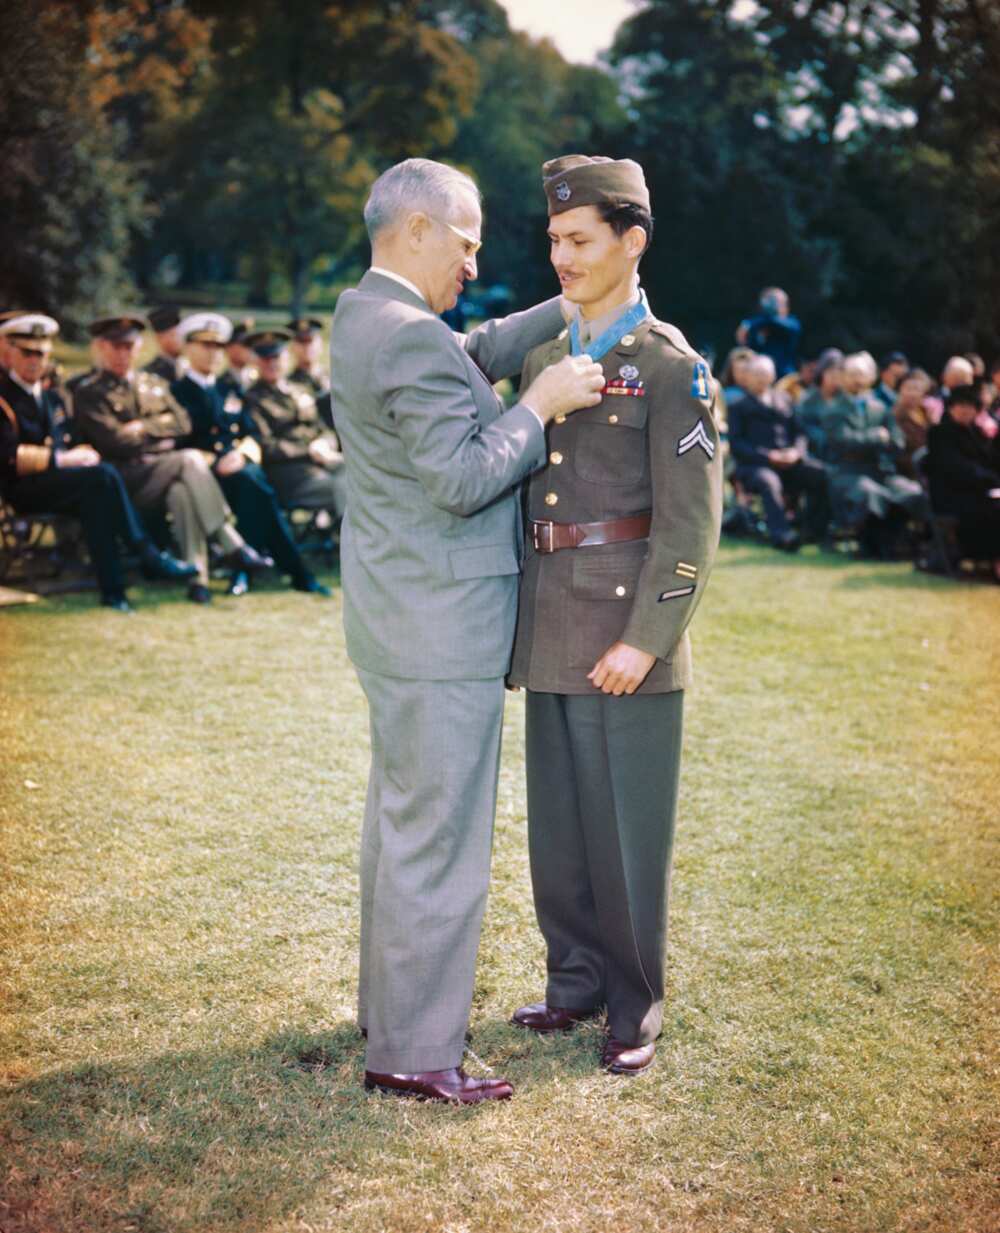 Le Président Truman remet la Médaille d'Honneur du Congrès au Caporal Desmond Doss.
Photo Getty Images